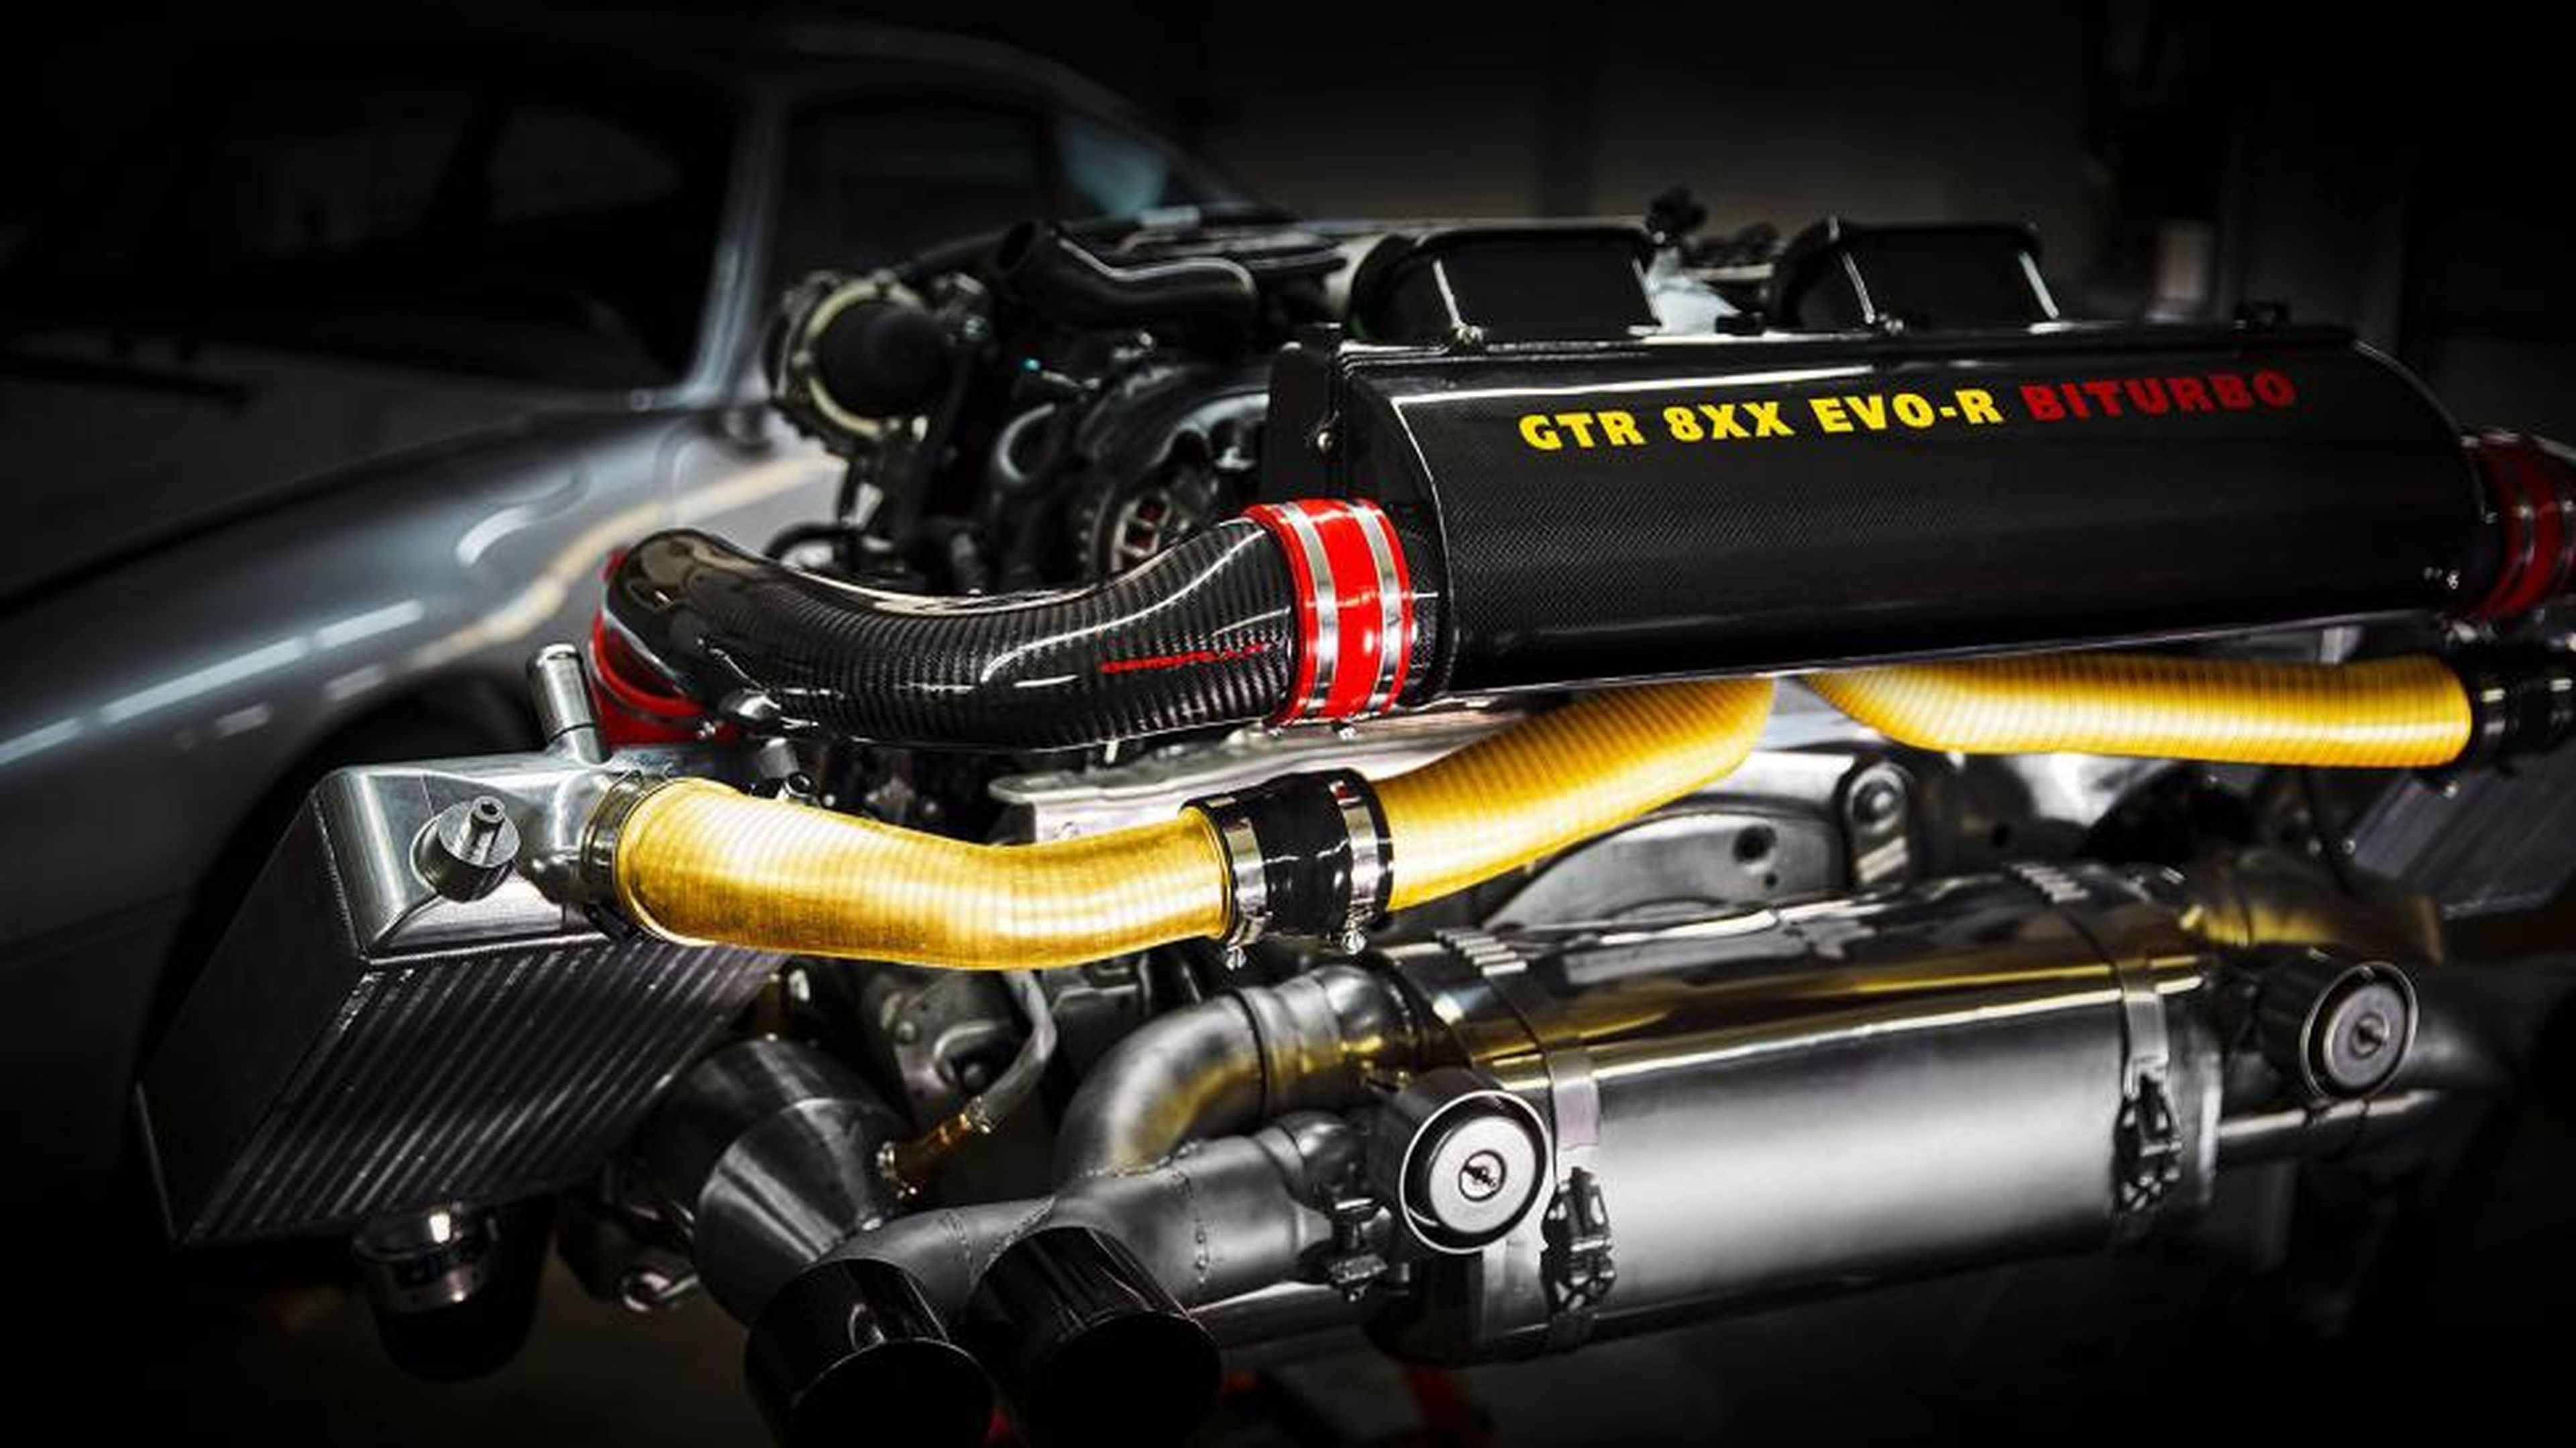 Motor bóxer biturbo de 3,8 litros del Porsche 911 Gemballa GTR 8XX Evo-R.